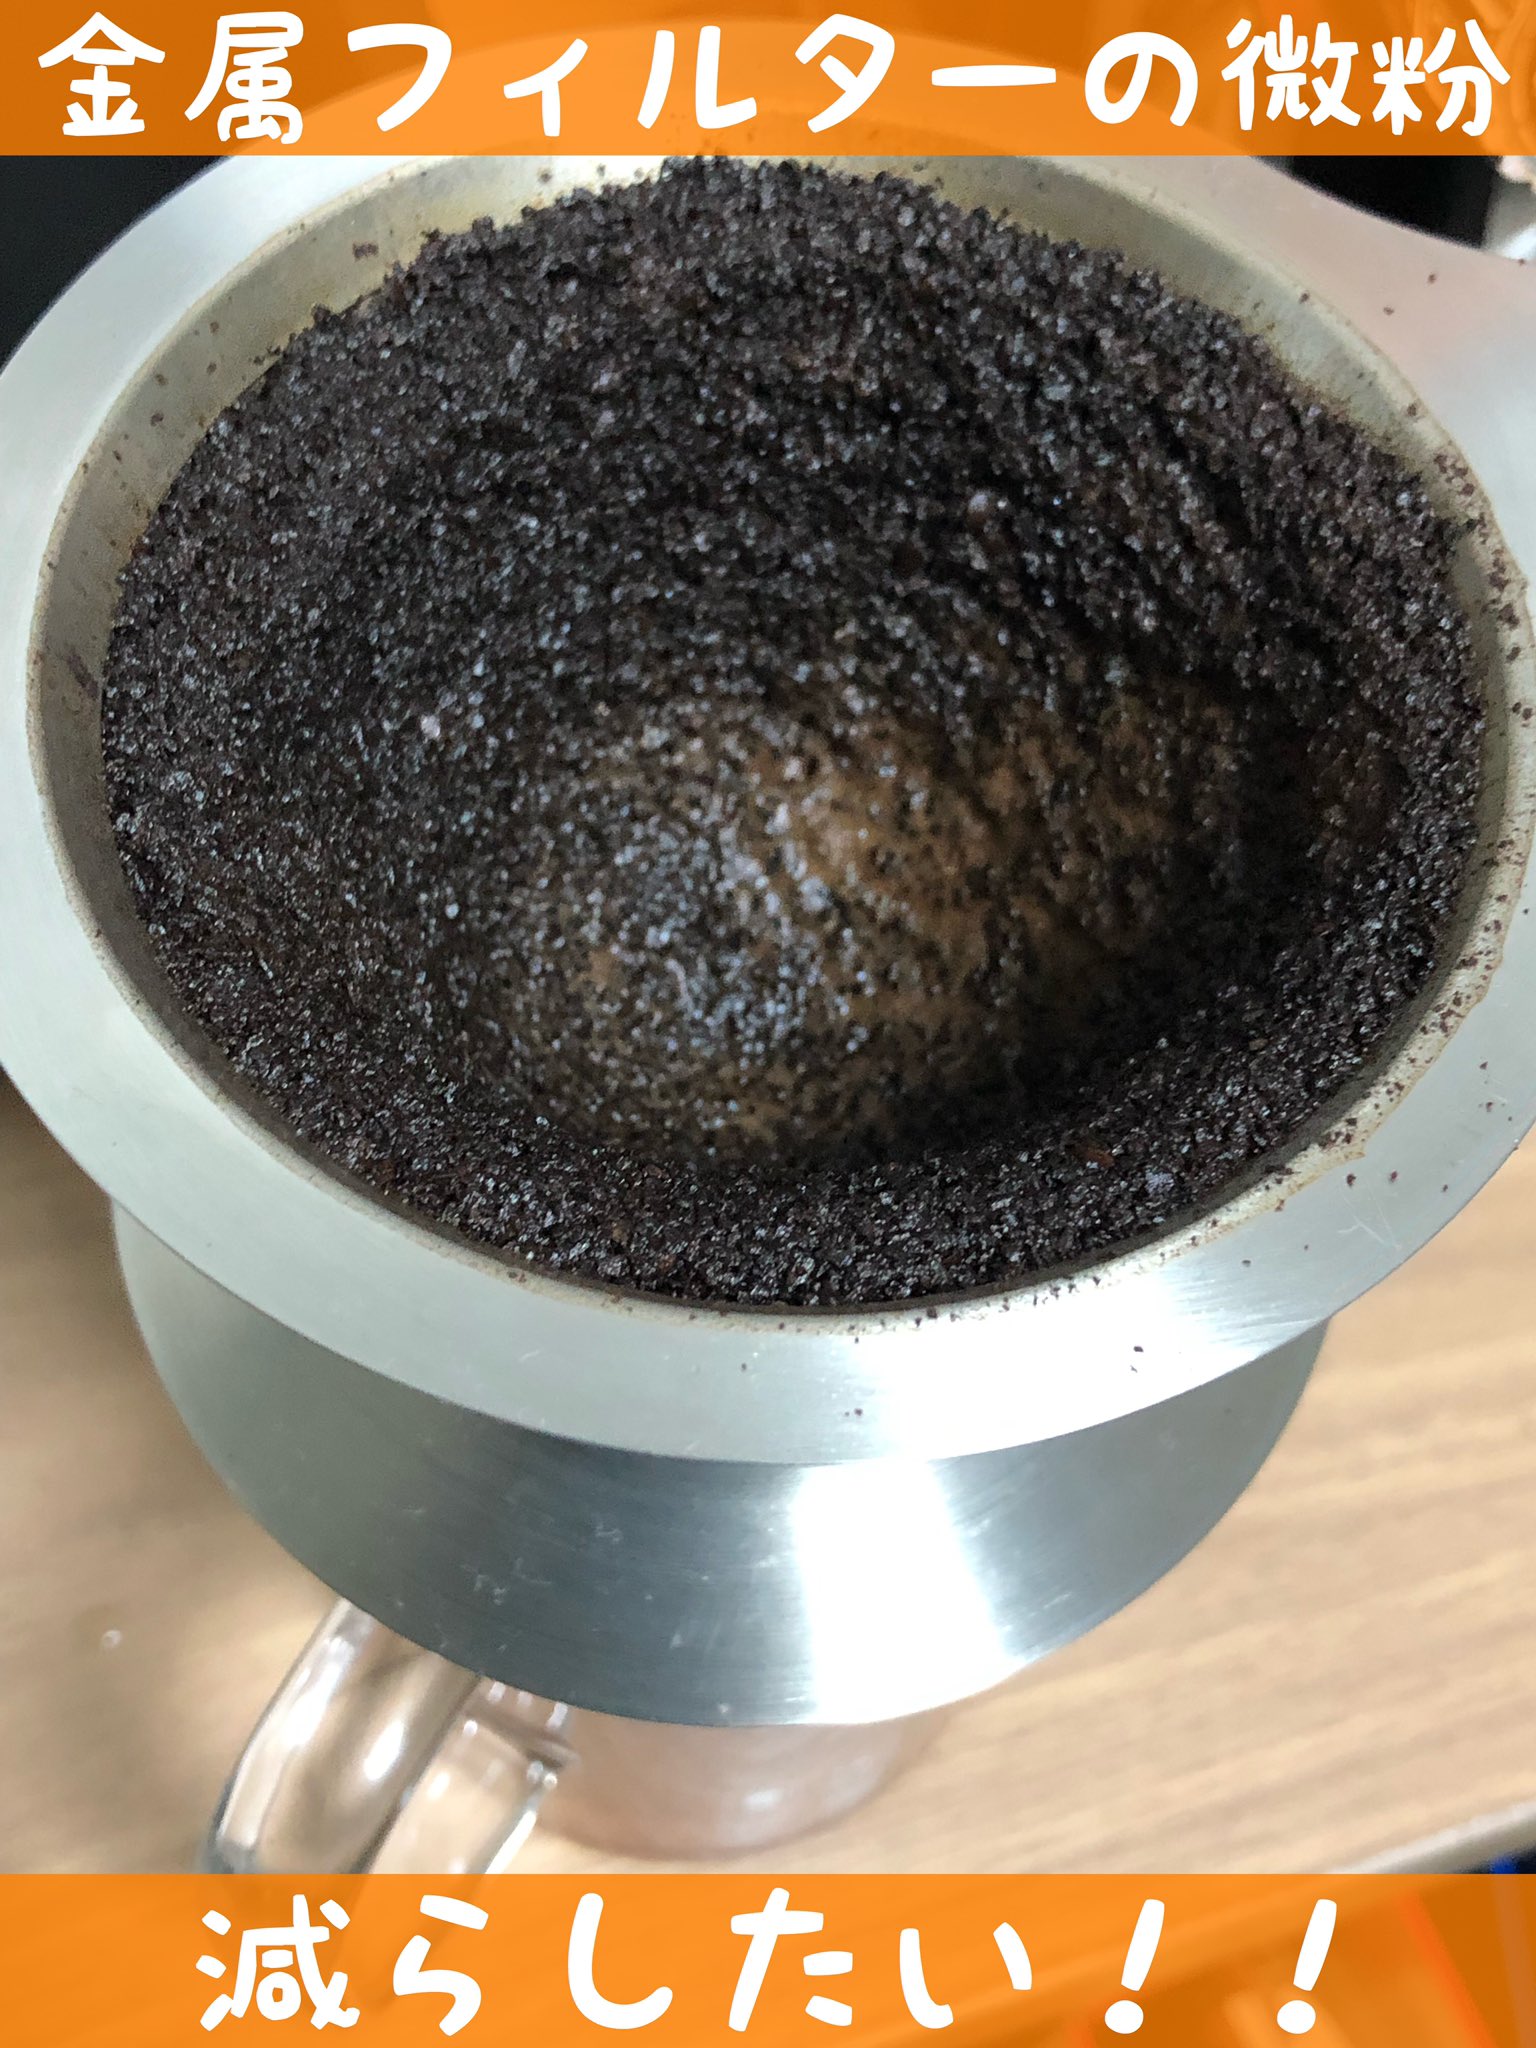 金属フィルター向け コーヒーの微粉を大幅に減らす3つの方法とは 珈琲ブログ こまめ家